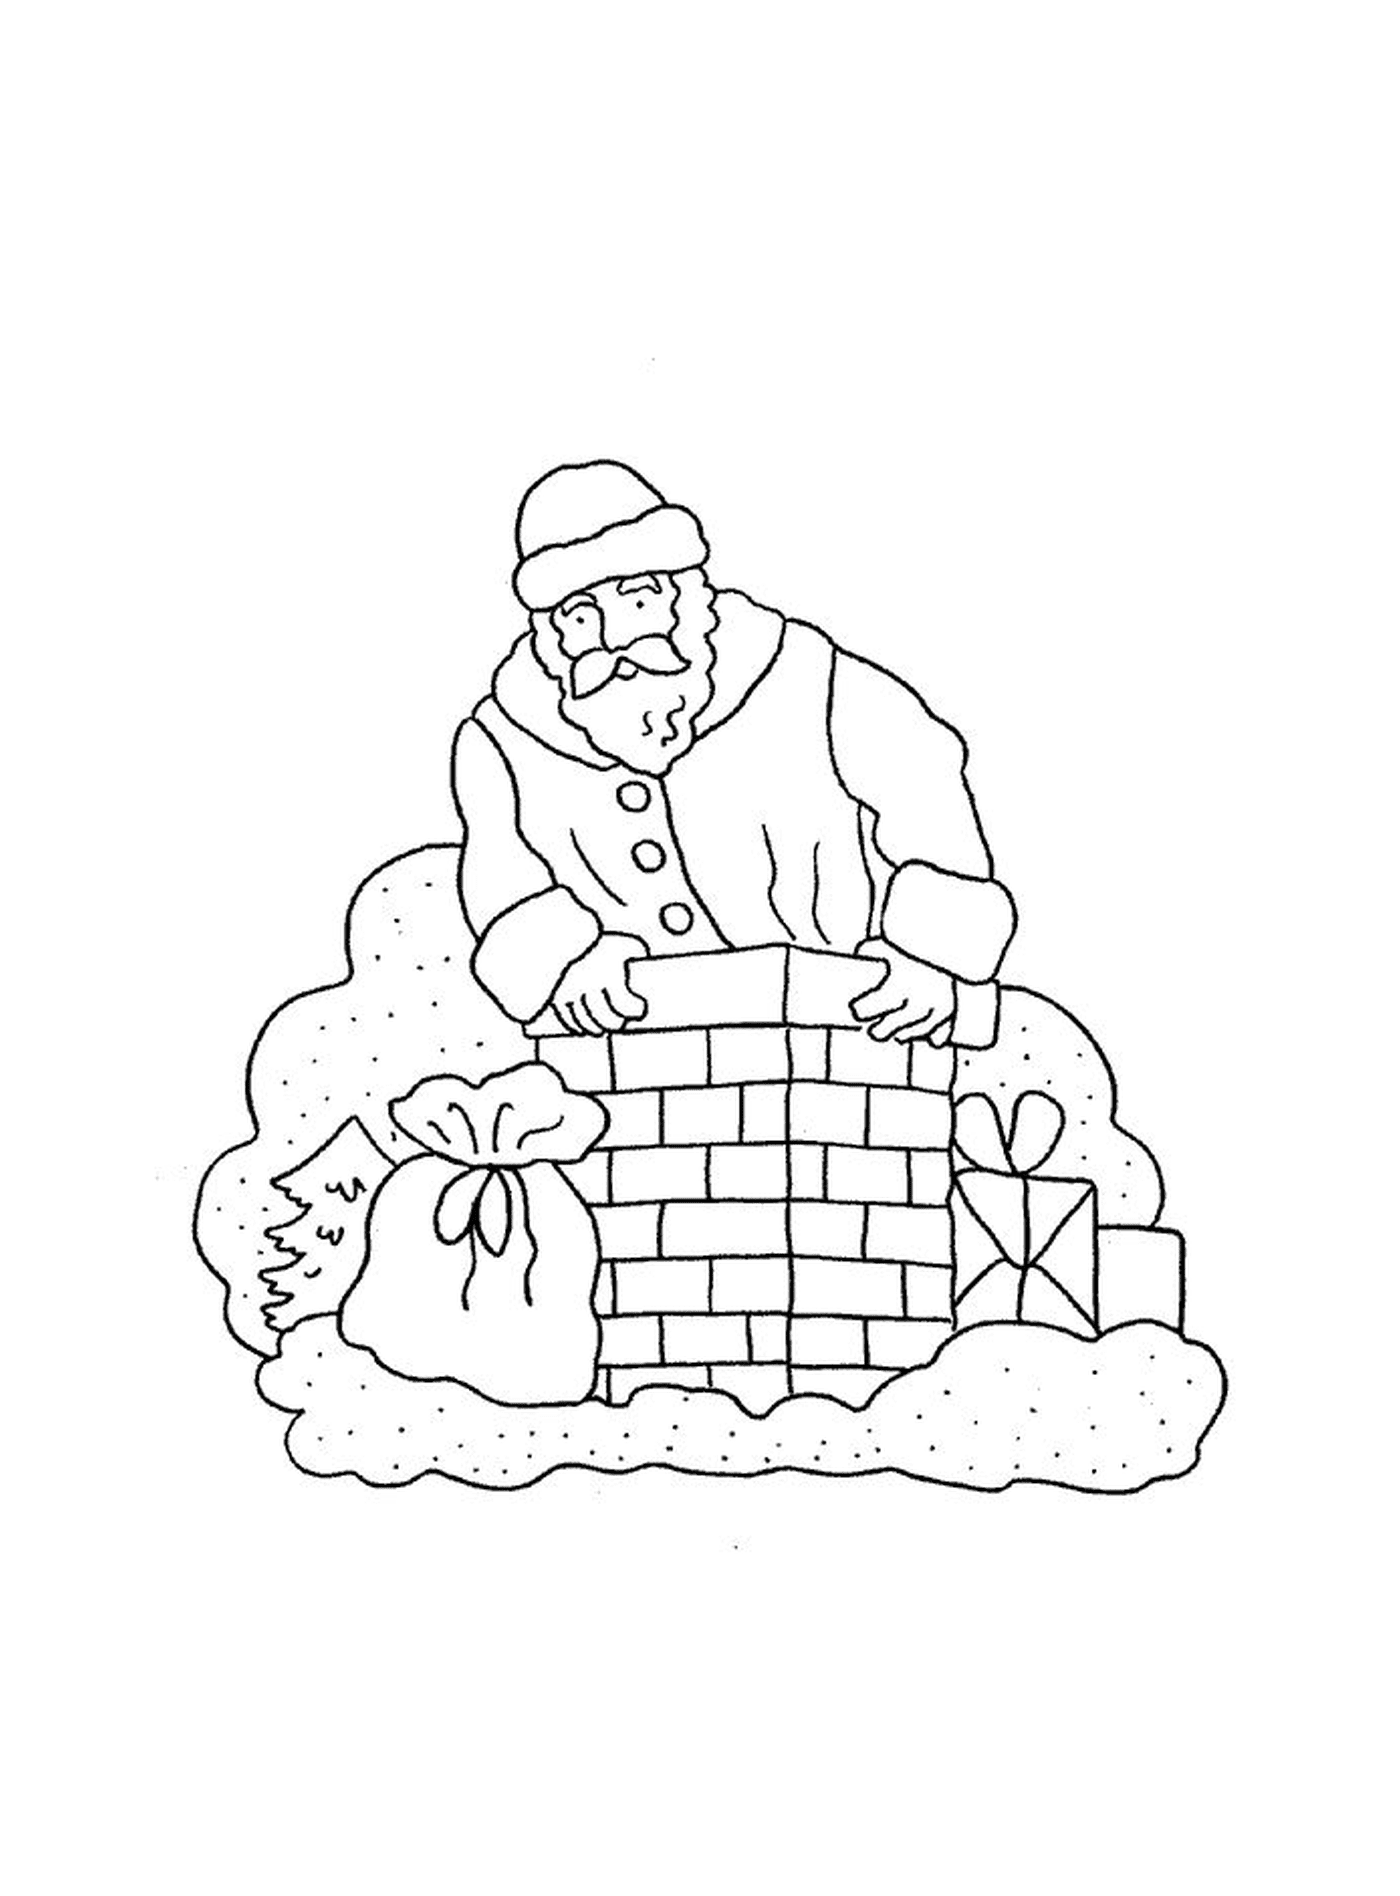  圣诞老人在建一个壁炉 